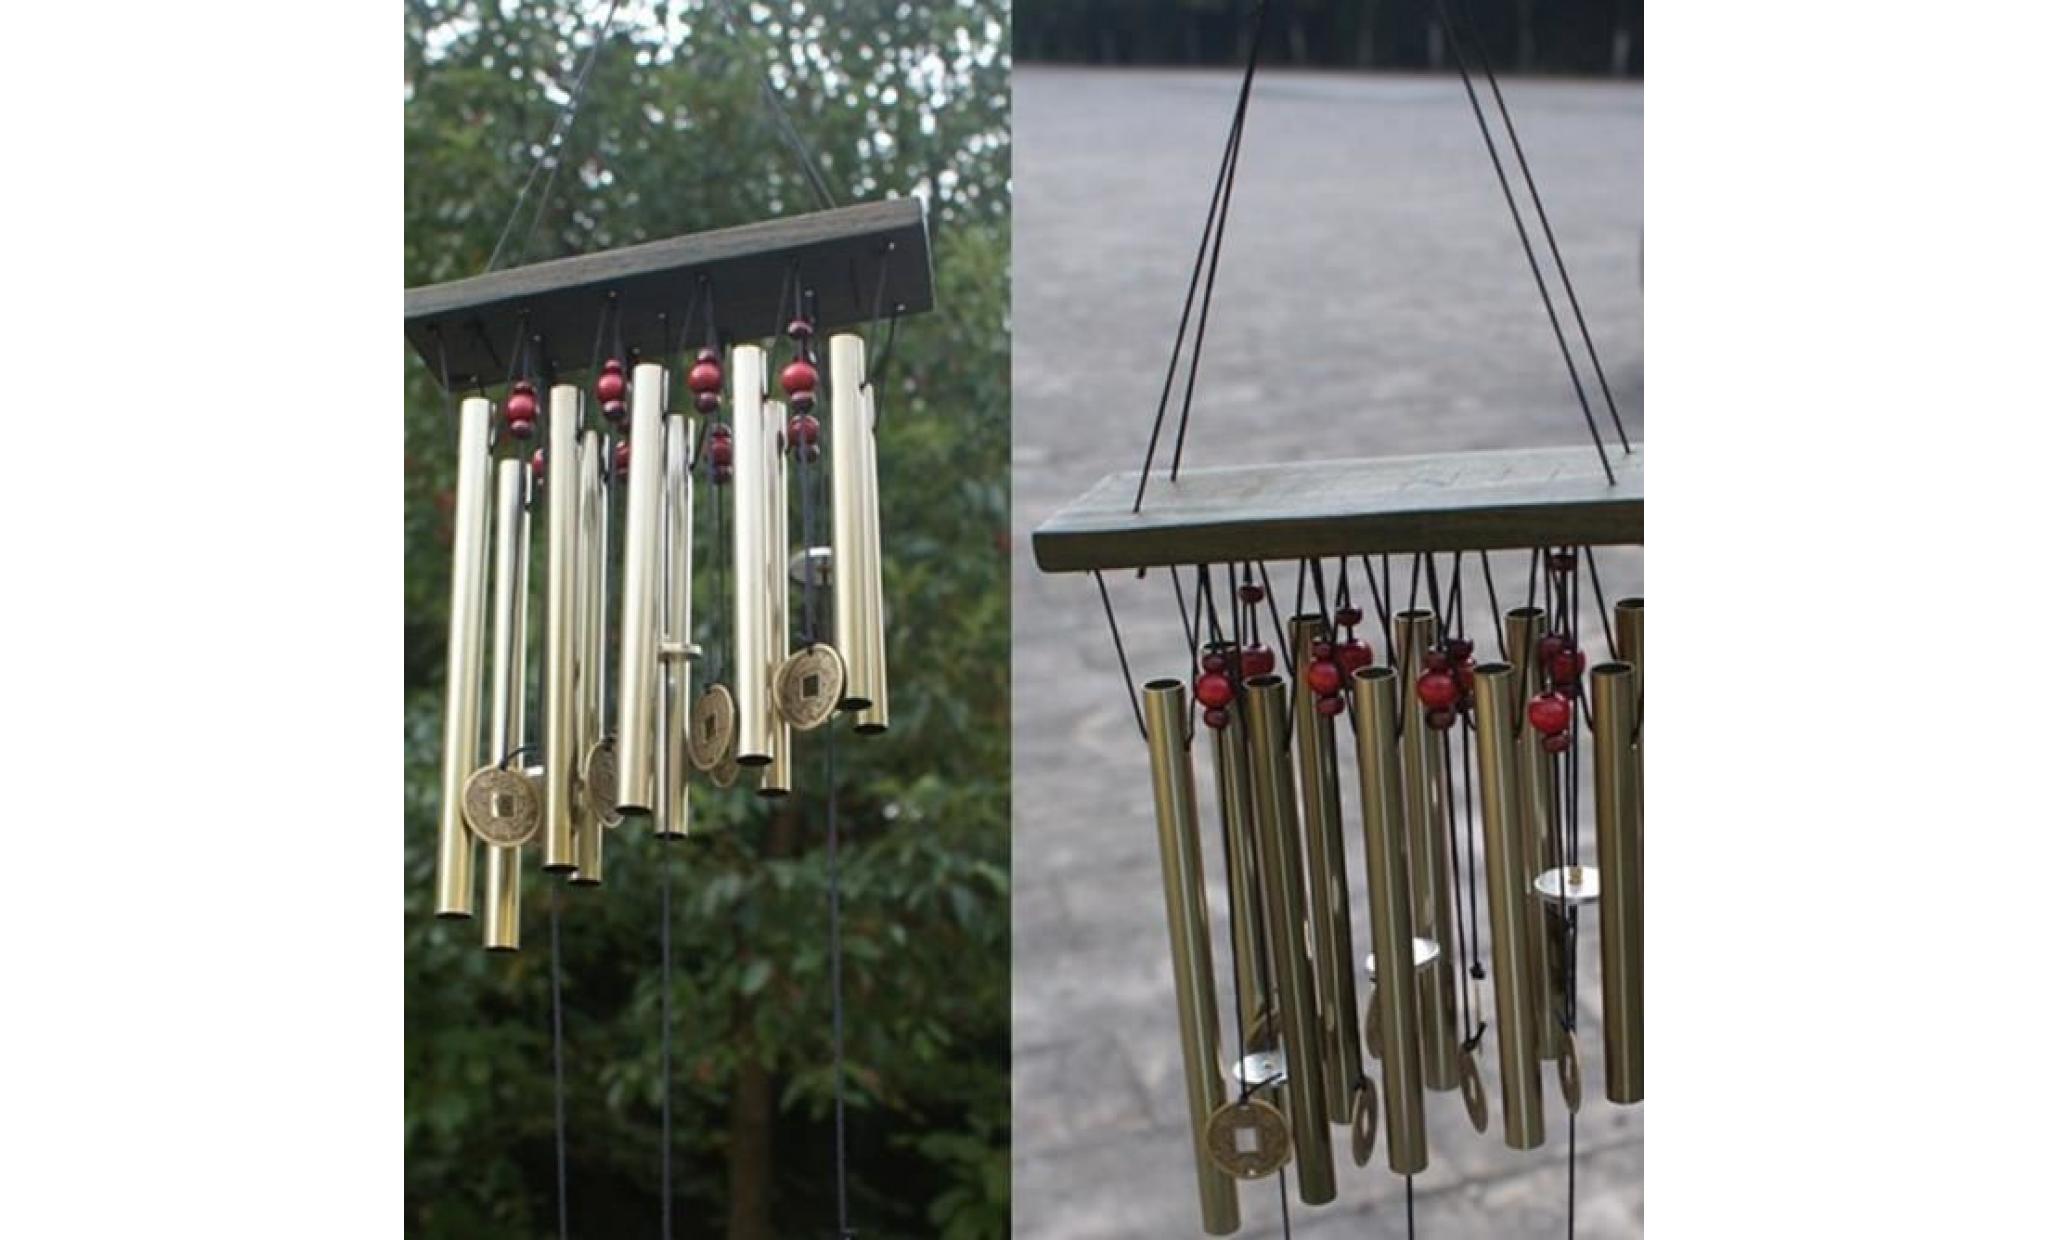 incroyable 10 tubes bois chapelle eglise cloches carillon de vent yard décor wh_jjqt * 596